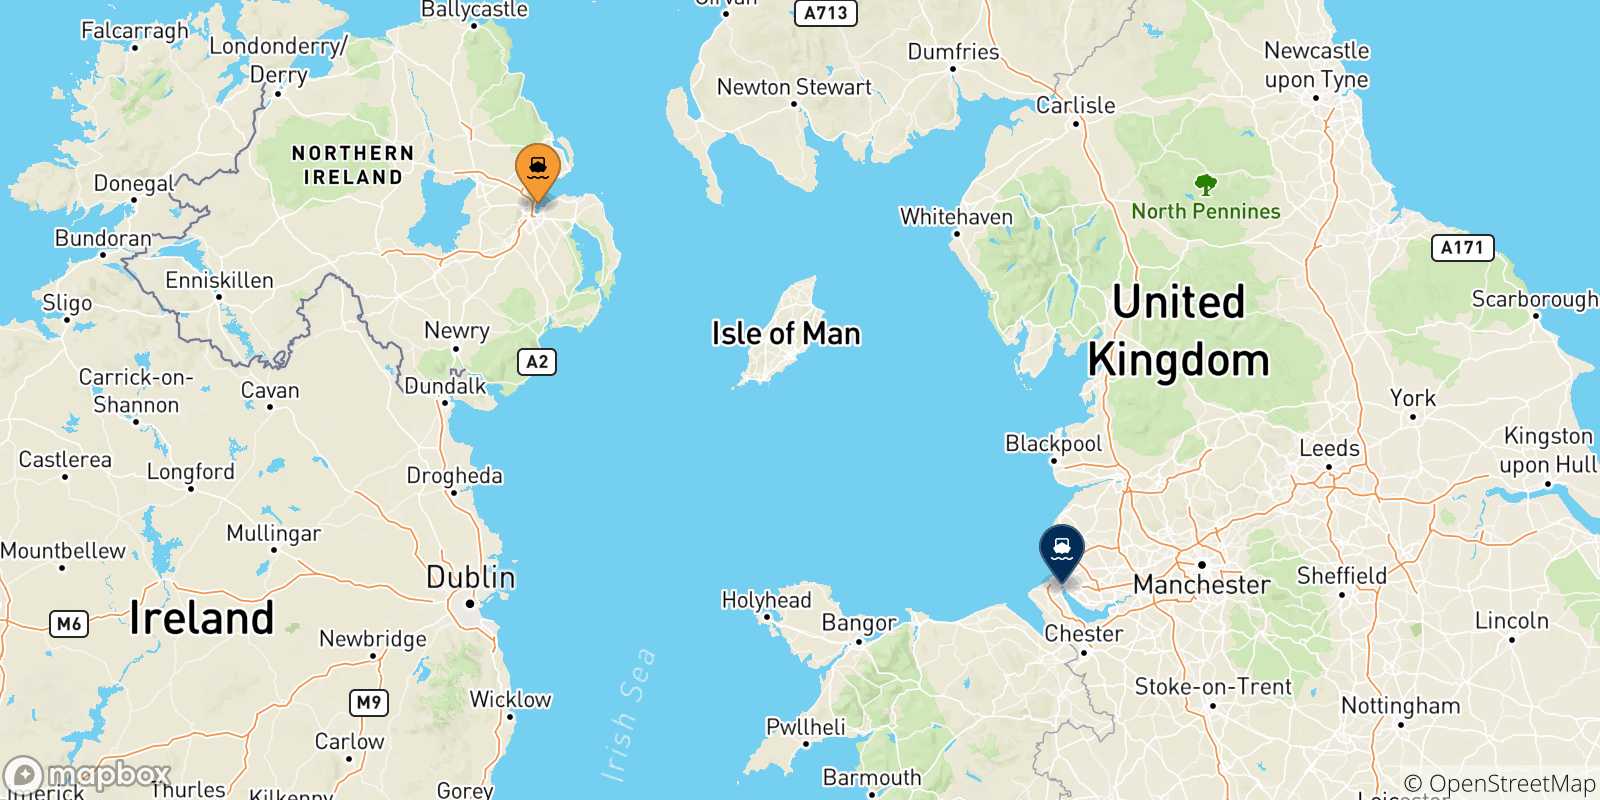 Mappa delle possibili rotte tra Belfast e l'Inghilterra